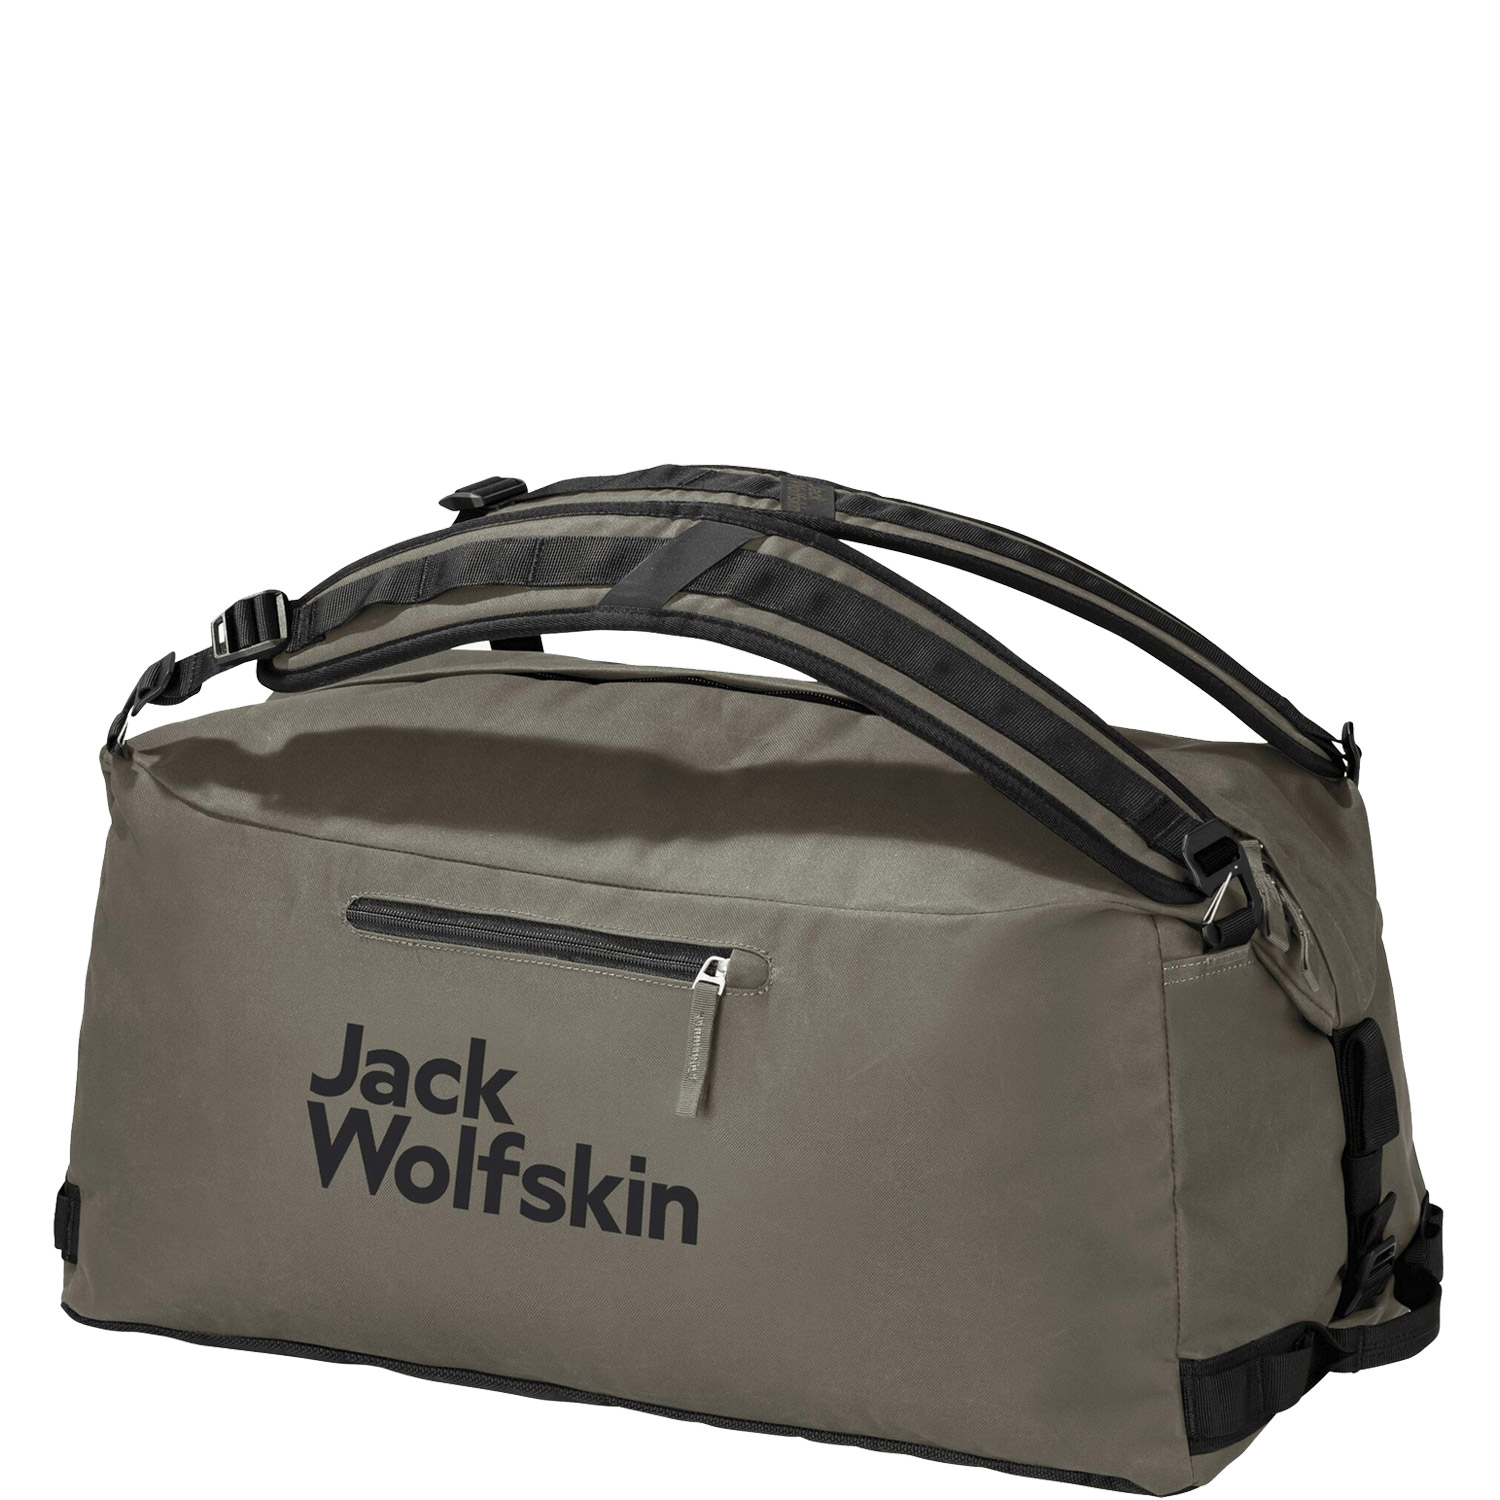 Jack Wolfskin Reisetasche/Rucksack Traveltopia Duffel 45 dusty olive